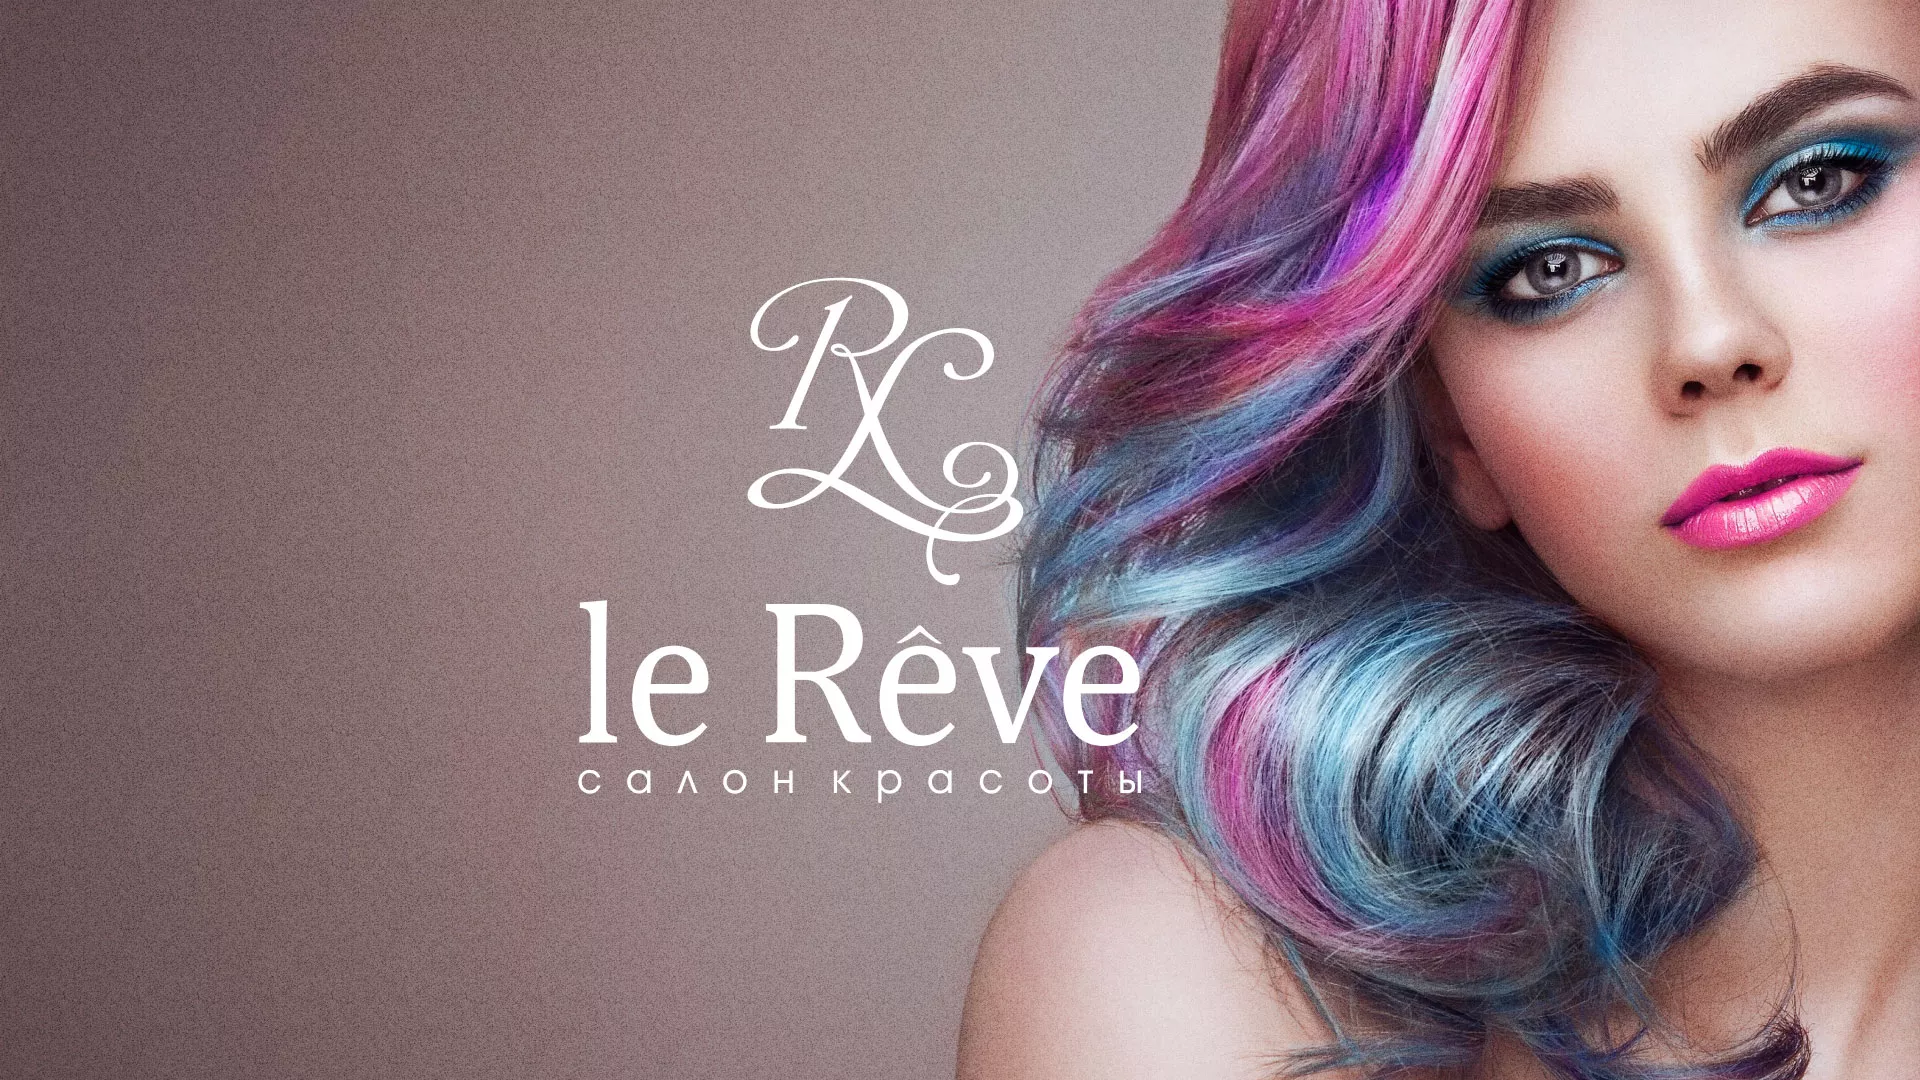 Создание сайта для салона красоты «Le Reve» в Астрахани